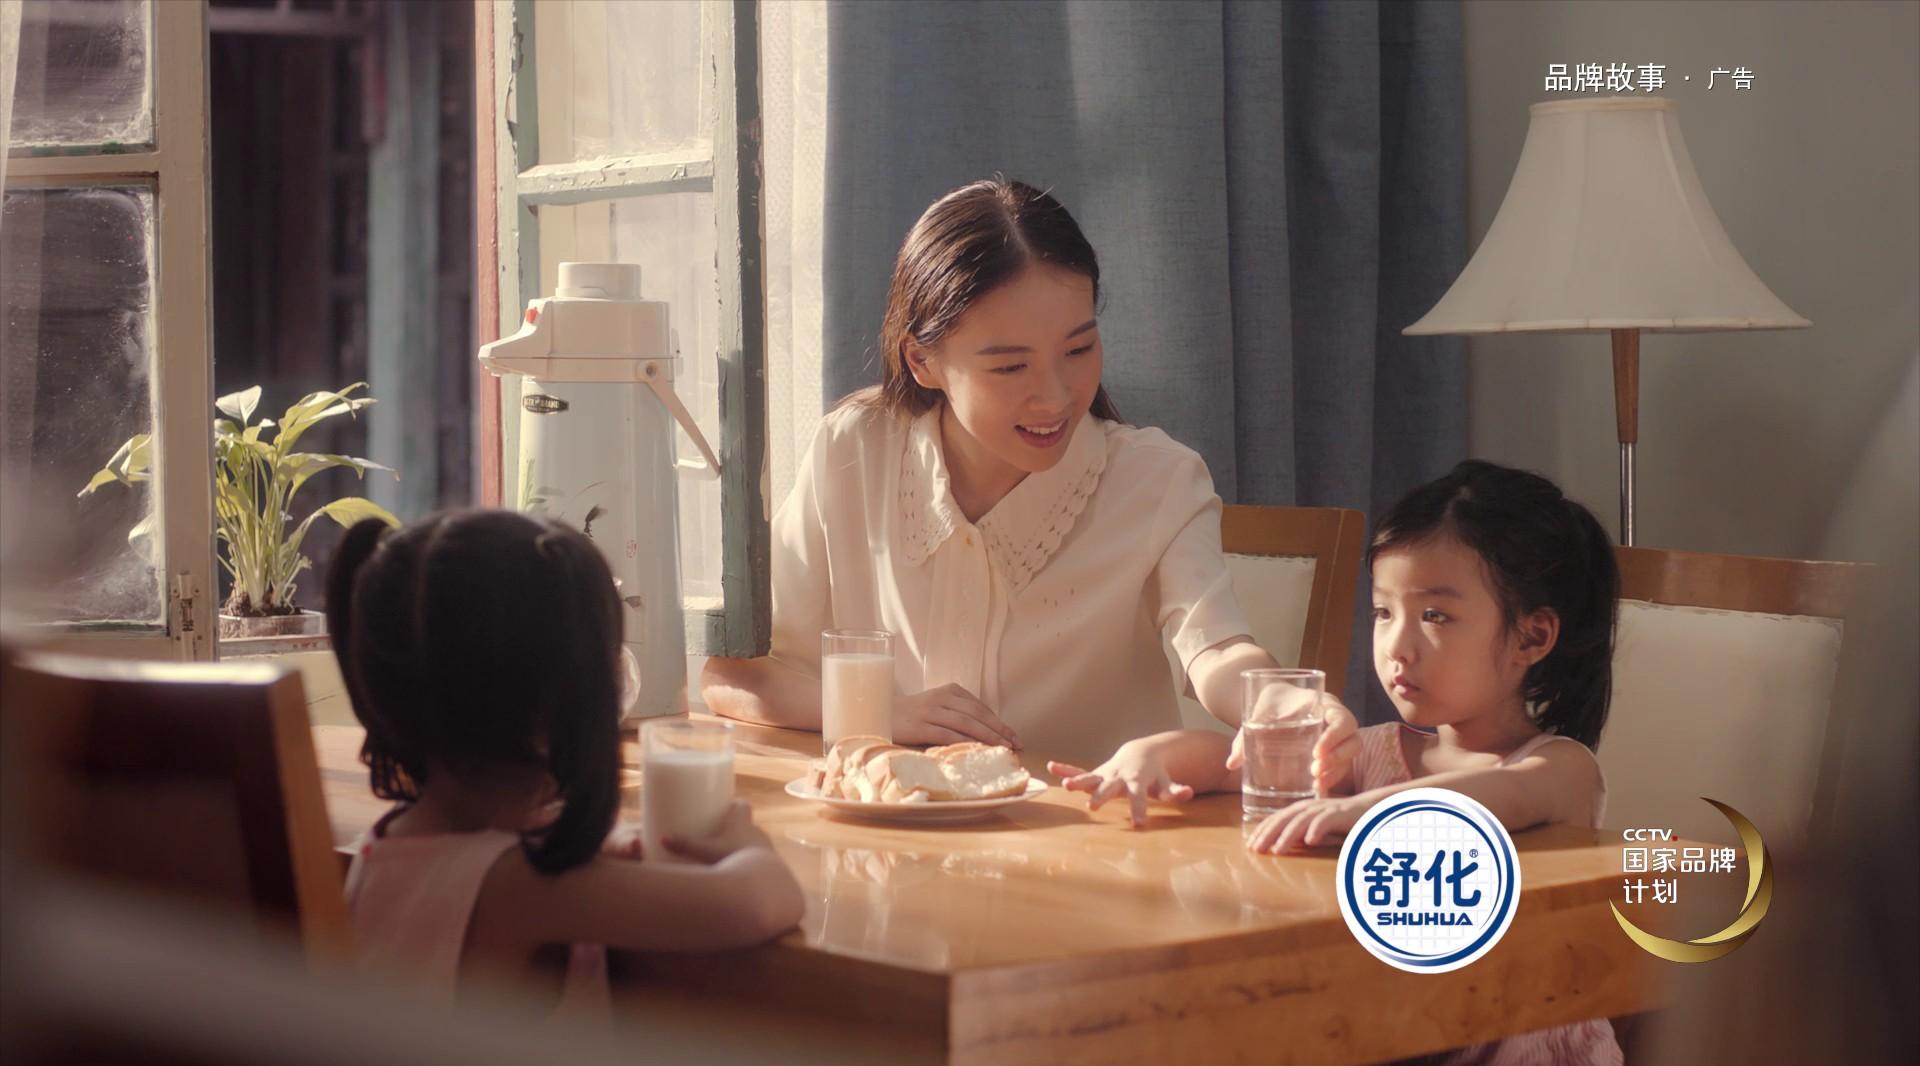 ShuHua Milk 舒化奶宣传片  国家品牌计划